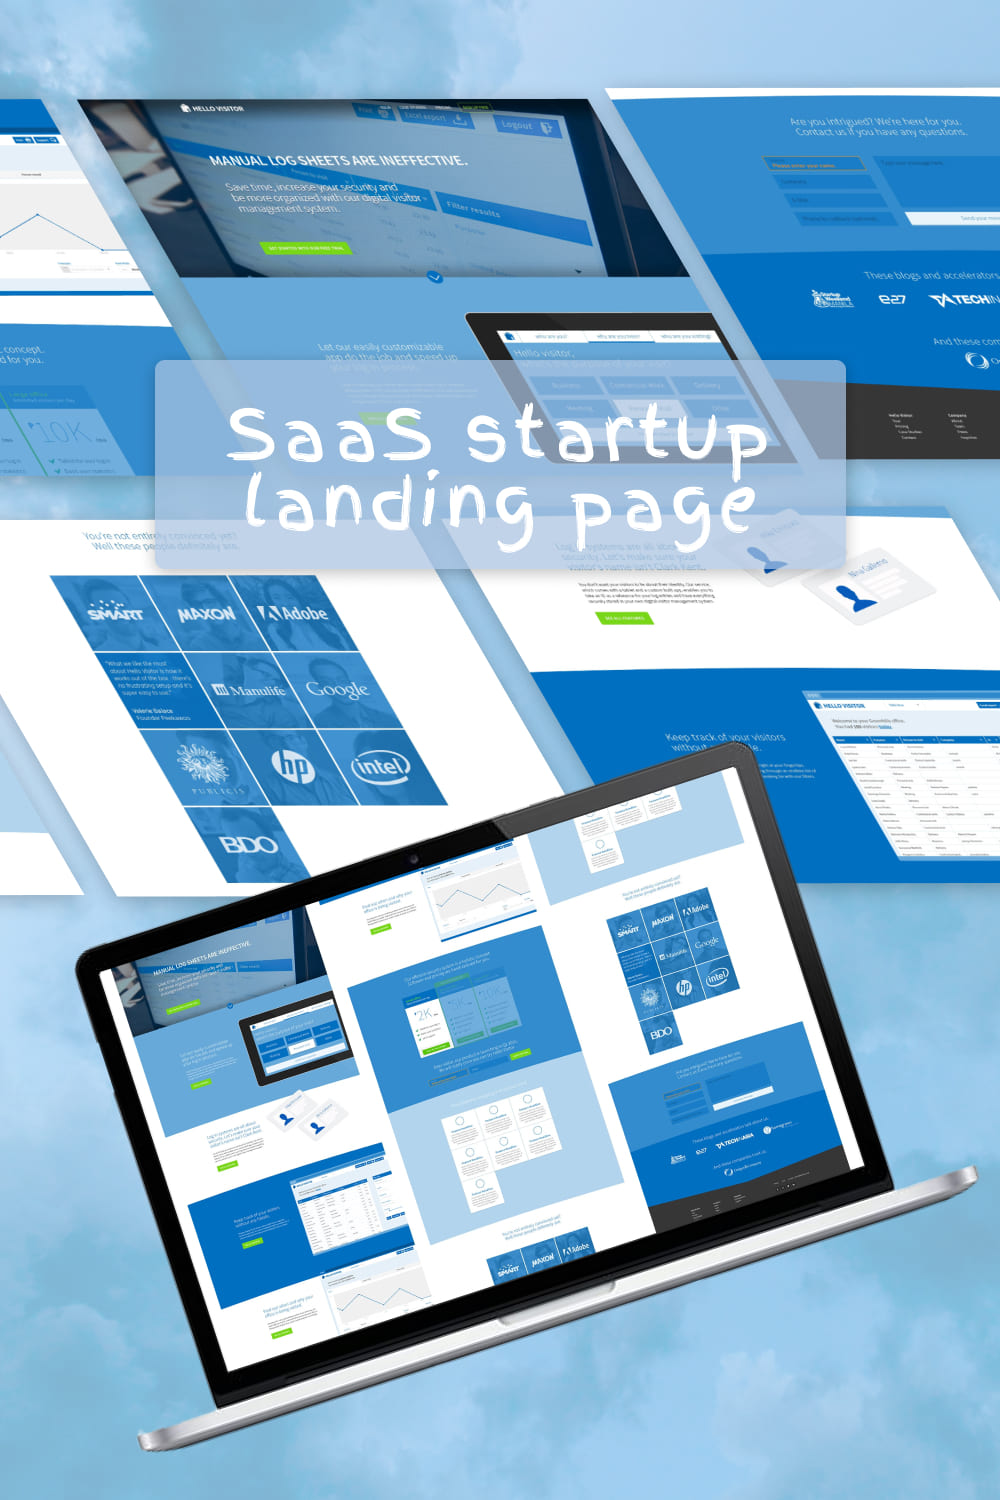 SaaS Startup Landing Page pinterest image.